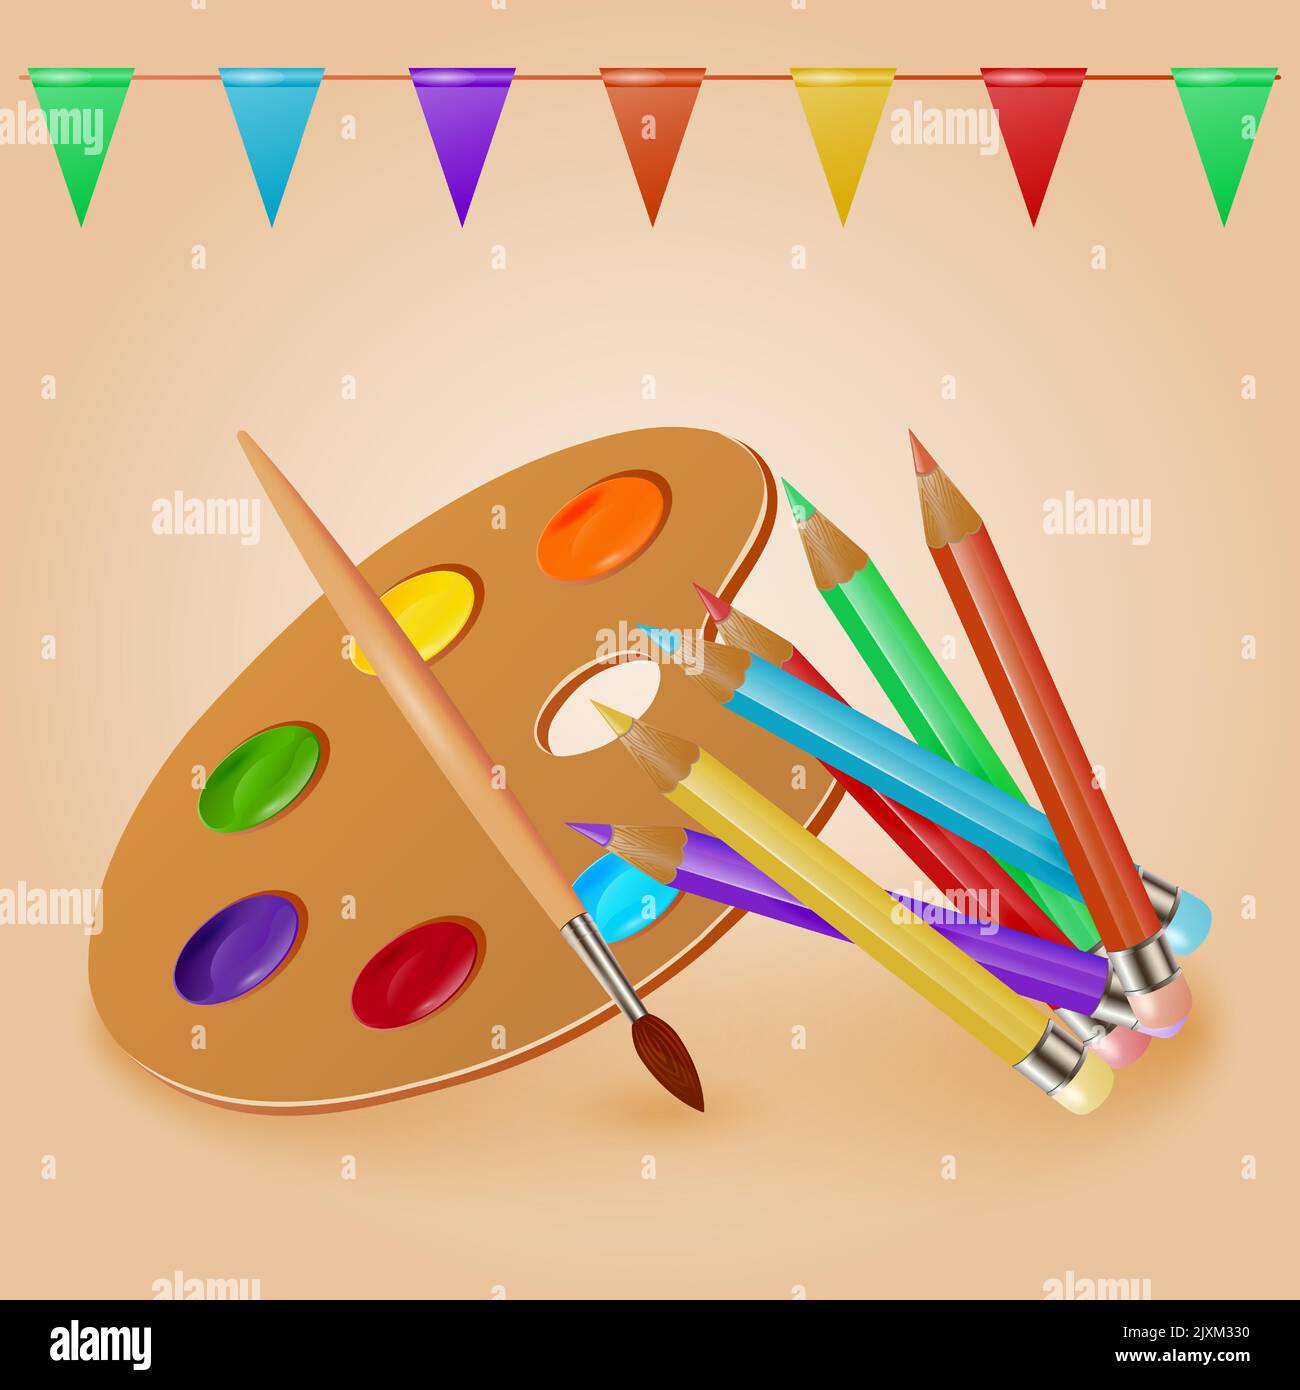 Farbenfrohe realistische Zeichenwerkzeuge Aquarellpalette mit Pinsel und Buntstiften. Bleistift, Palette, Pinsel. Vektorgrafik. Stock Vektor